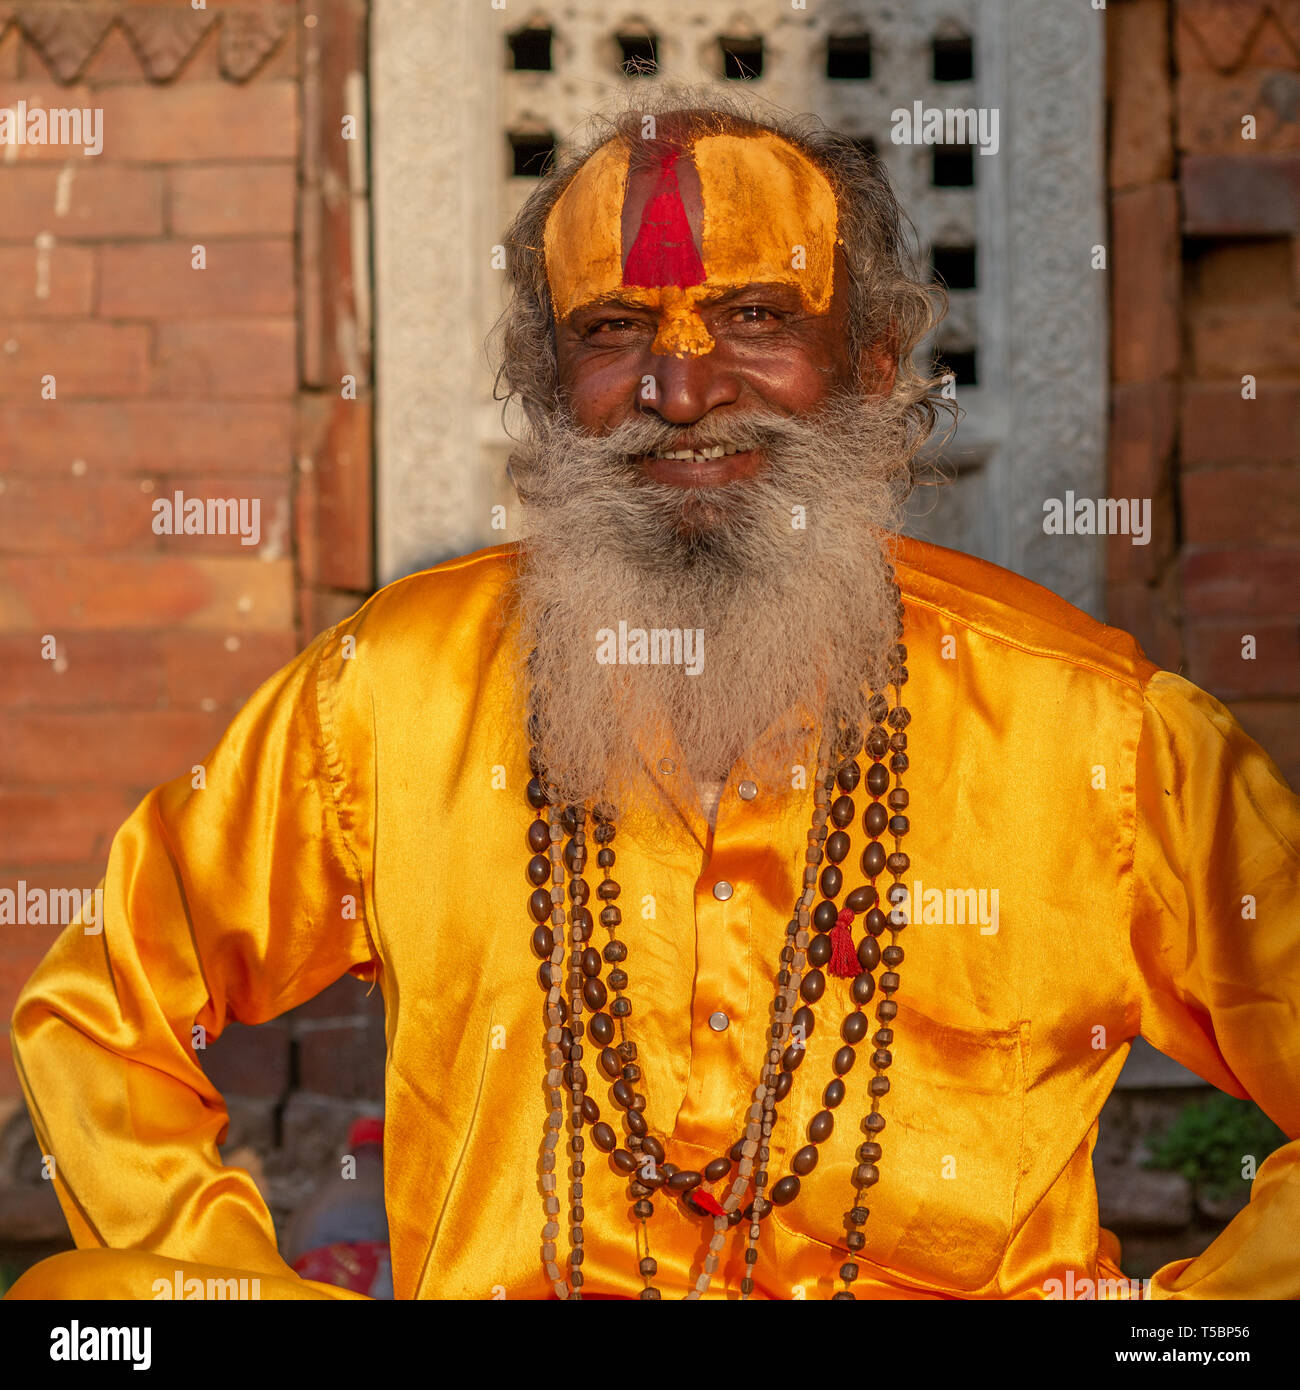 TILGANGA, Katmandou, Népal - 2 avril 2019 : un sadhu al habillés en vêtements de soie jaune safran Banque D'Images